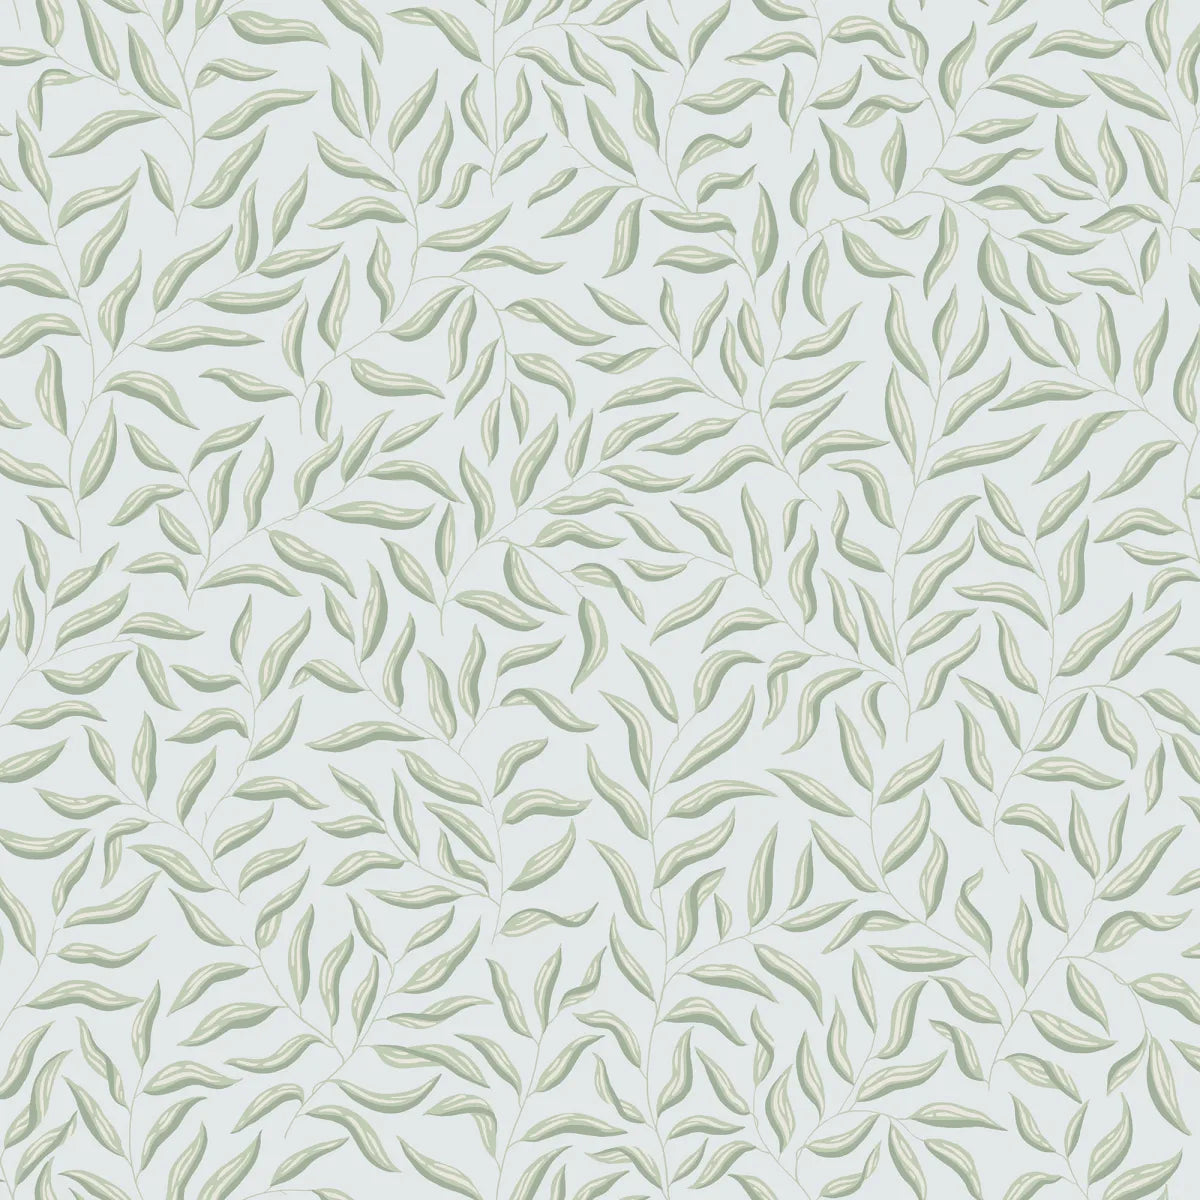 Wallpaper design Karolina, Light Blue, has transparent green leaves against a sky-blue background.